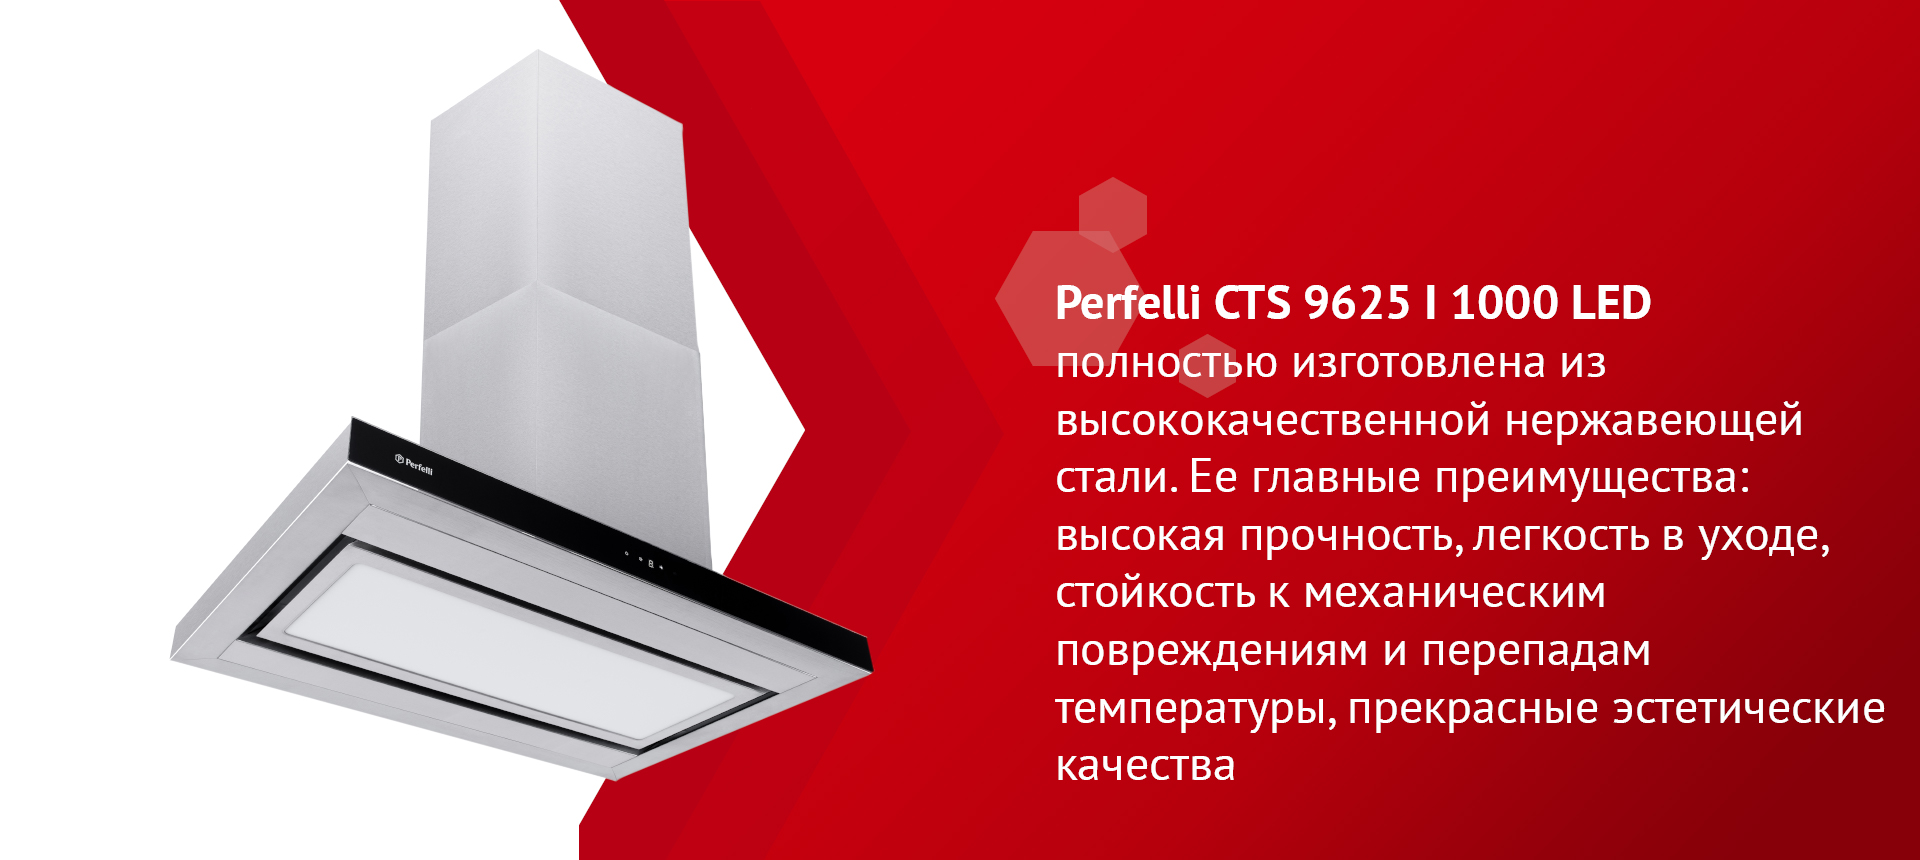 Perfelli CTS 9625 I 1000 LED полностью изготовлена из высококачественной нержавеющей стали. Ее главные преимущества: высокая прочность, легкость в уходе, стойкость к механическим повреждениям и перепадам температуры, прекрасные эстетические качества